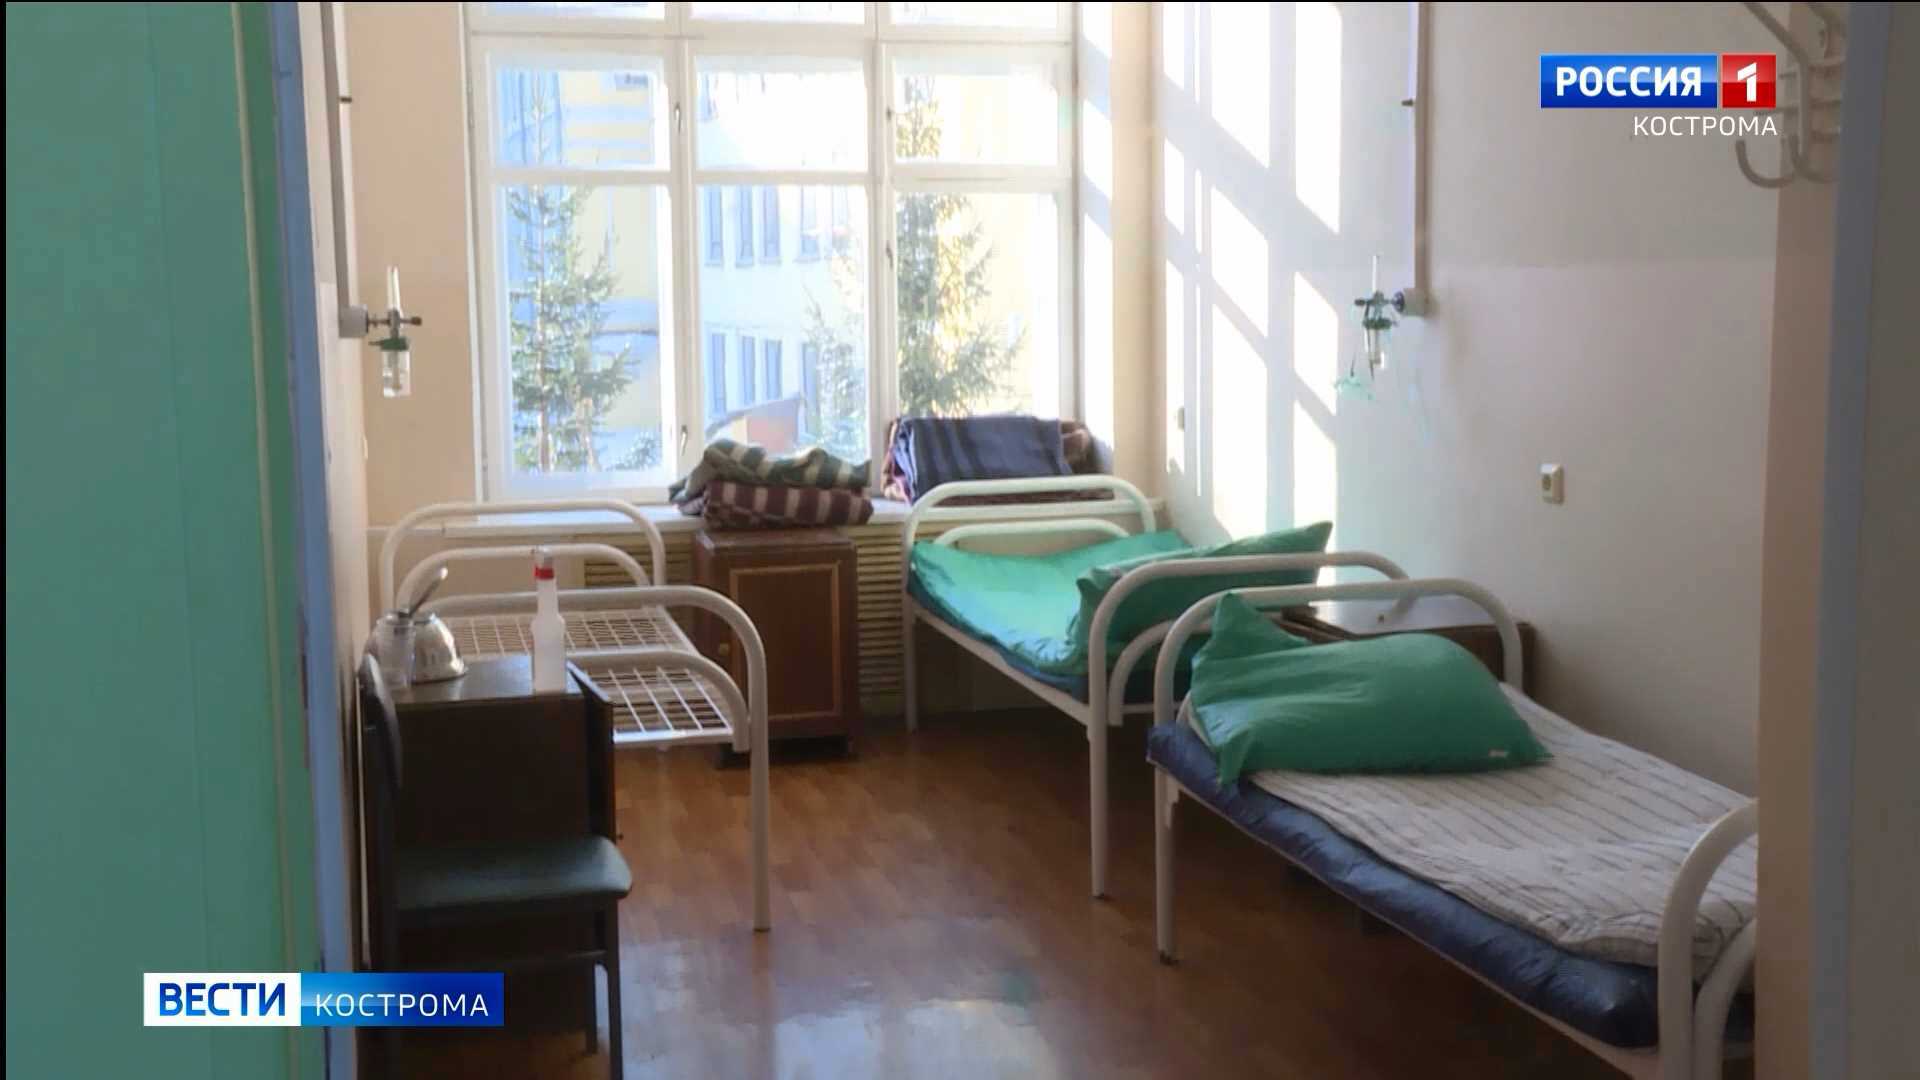 Сразу три «красные зоны» закрылись в костромских больницах